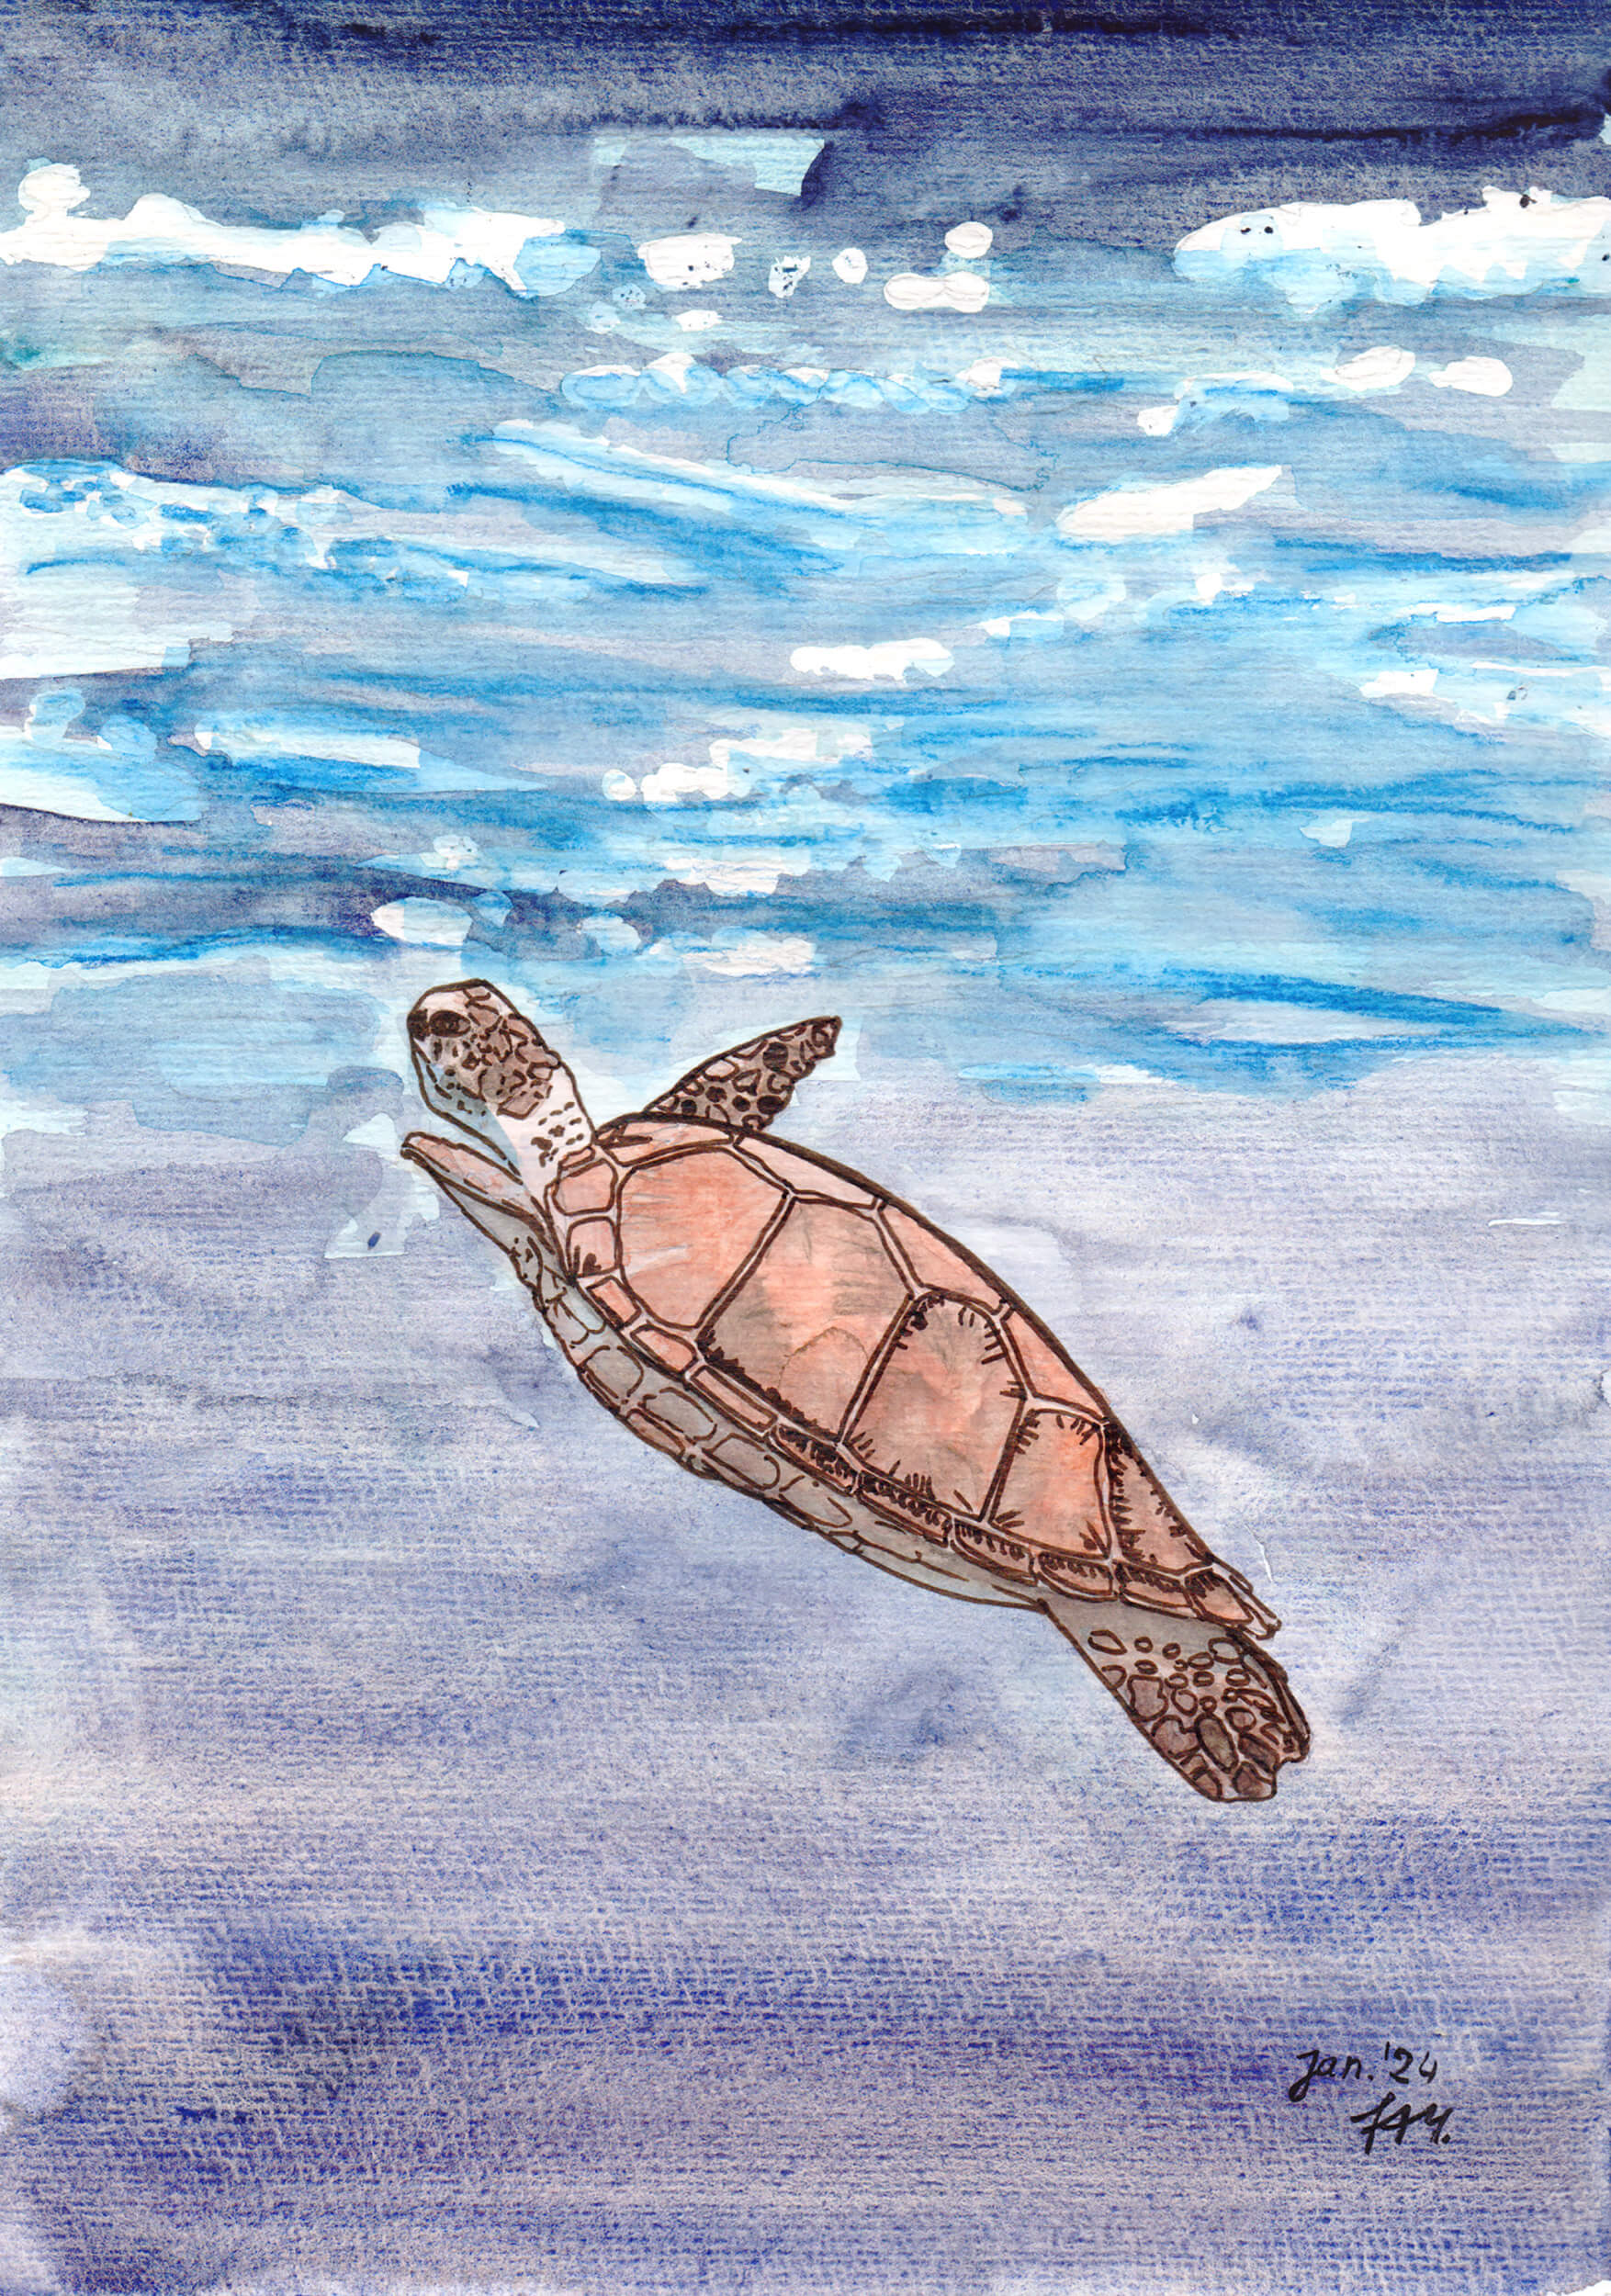 Meeresschildkröte malen: Fertiges Aquarell